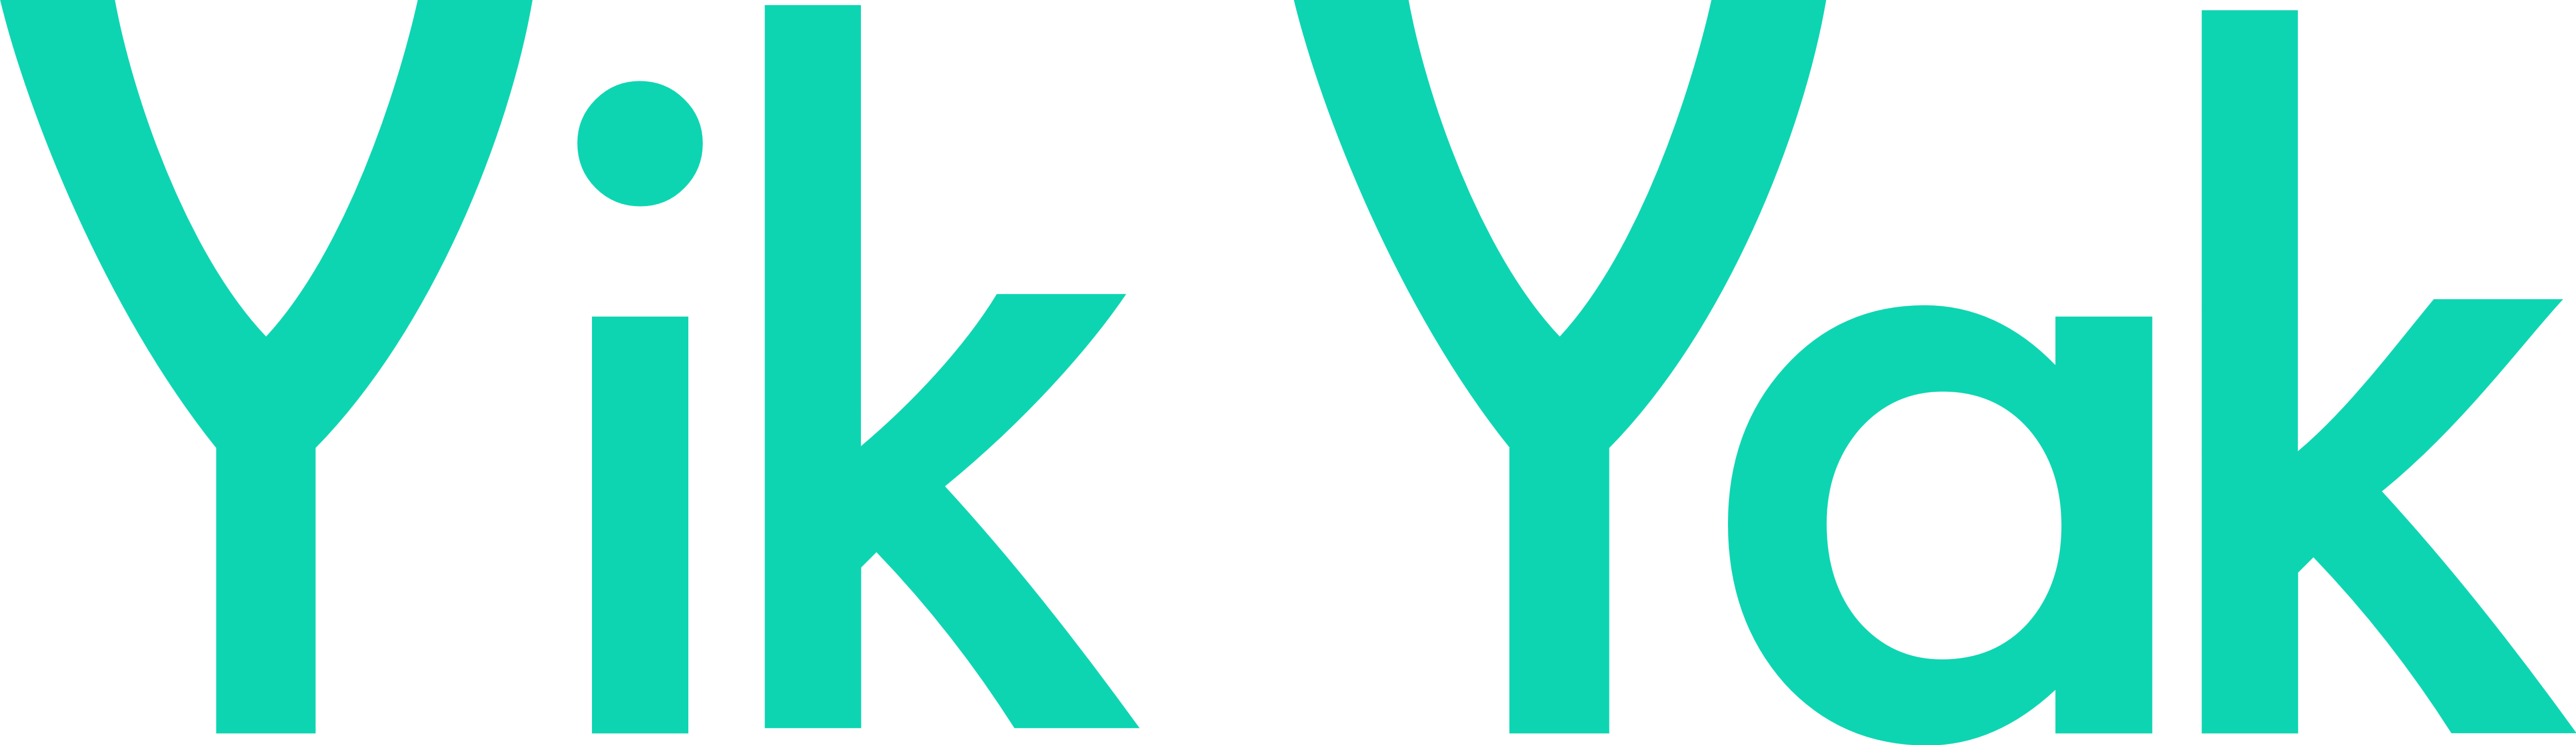 Yik Yak Black and White Logo - Yik Yak – Logos Download